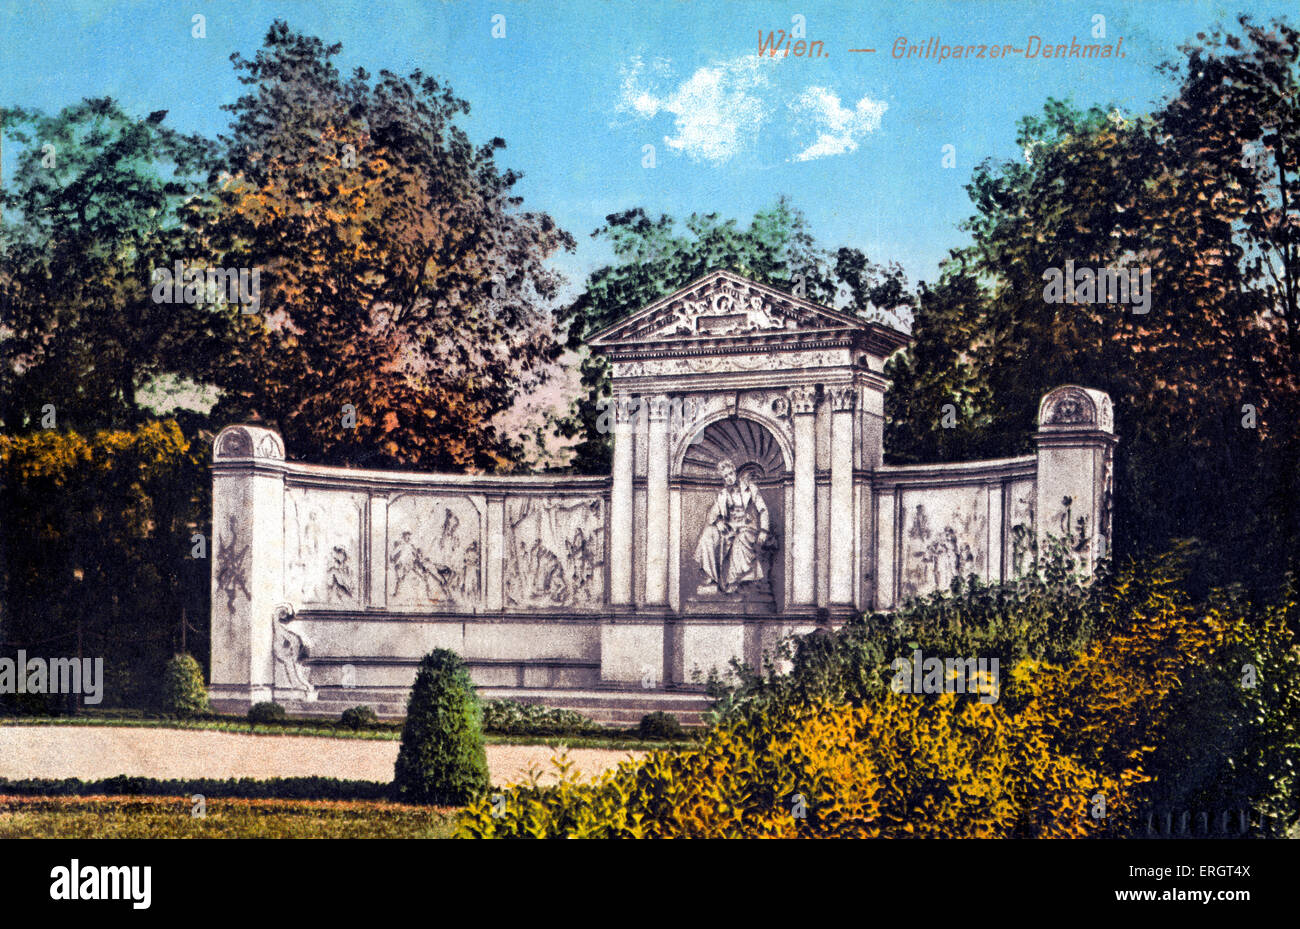 Grillparzer-Denkmal in öffentlichen Gärten, Vienna / Grillparzer-Denkmal, Volksgarten, Wien.  Hand getönte Postkarte Franz Stockfoto